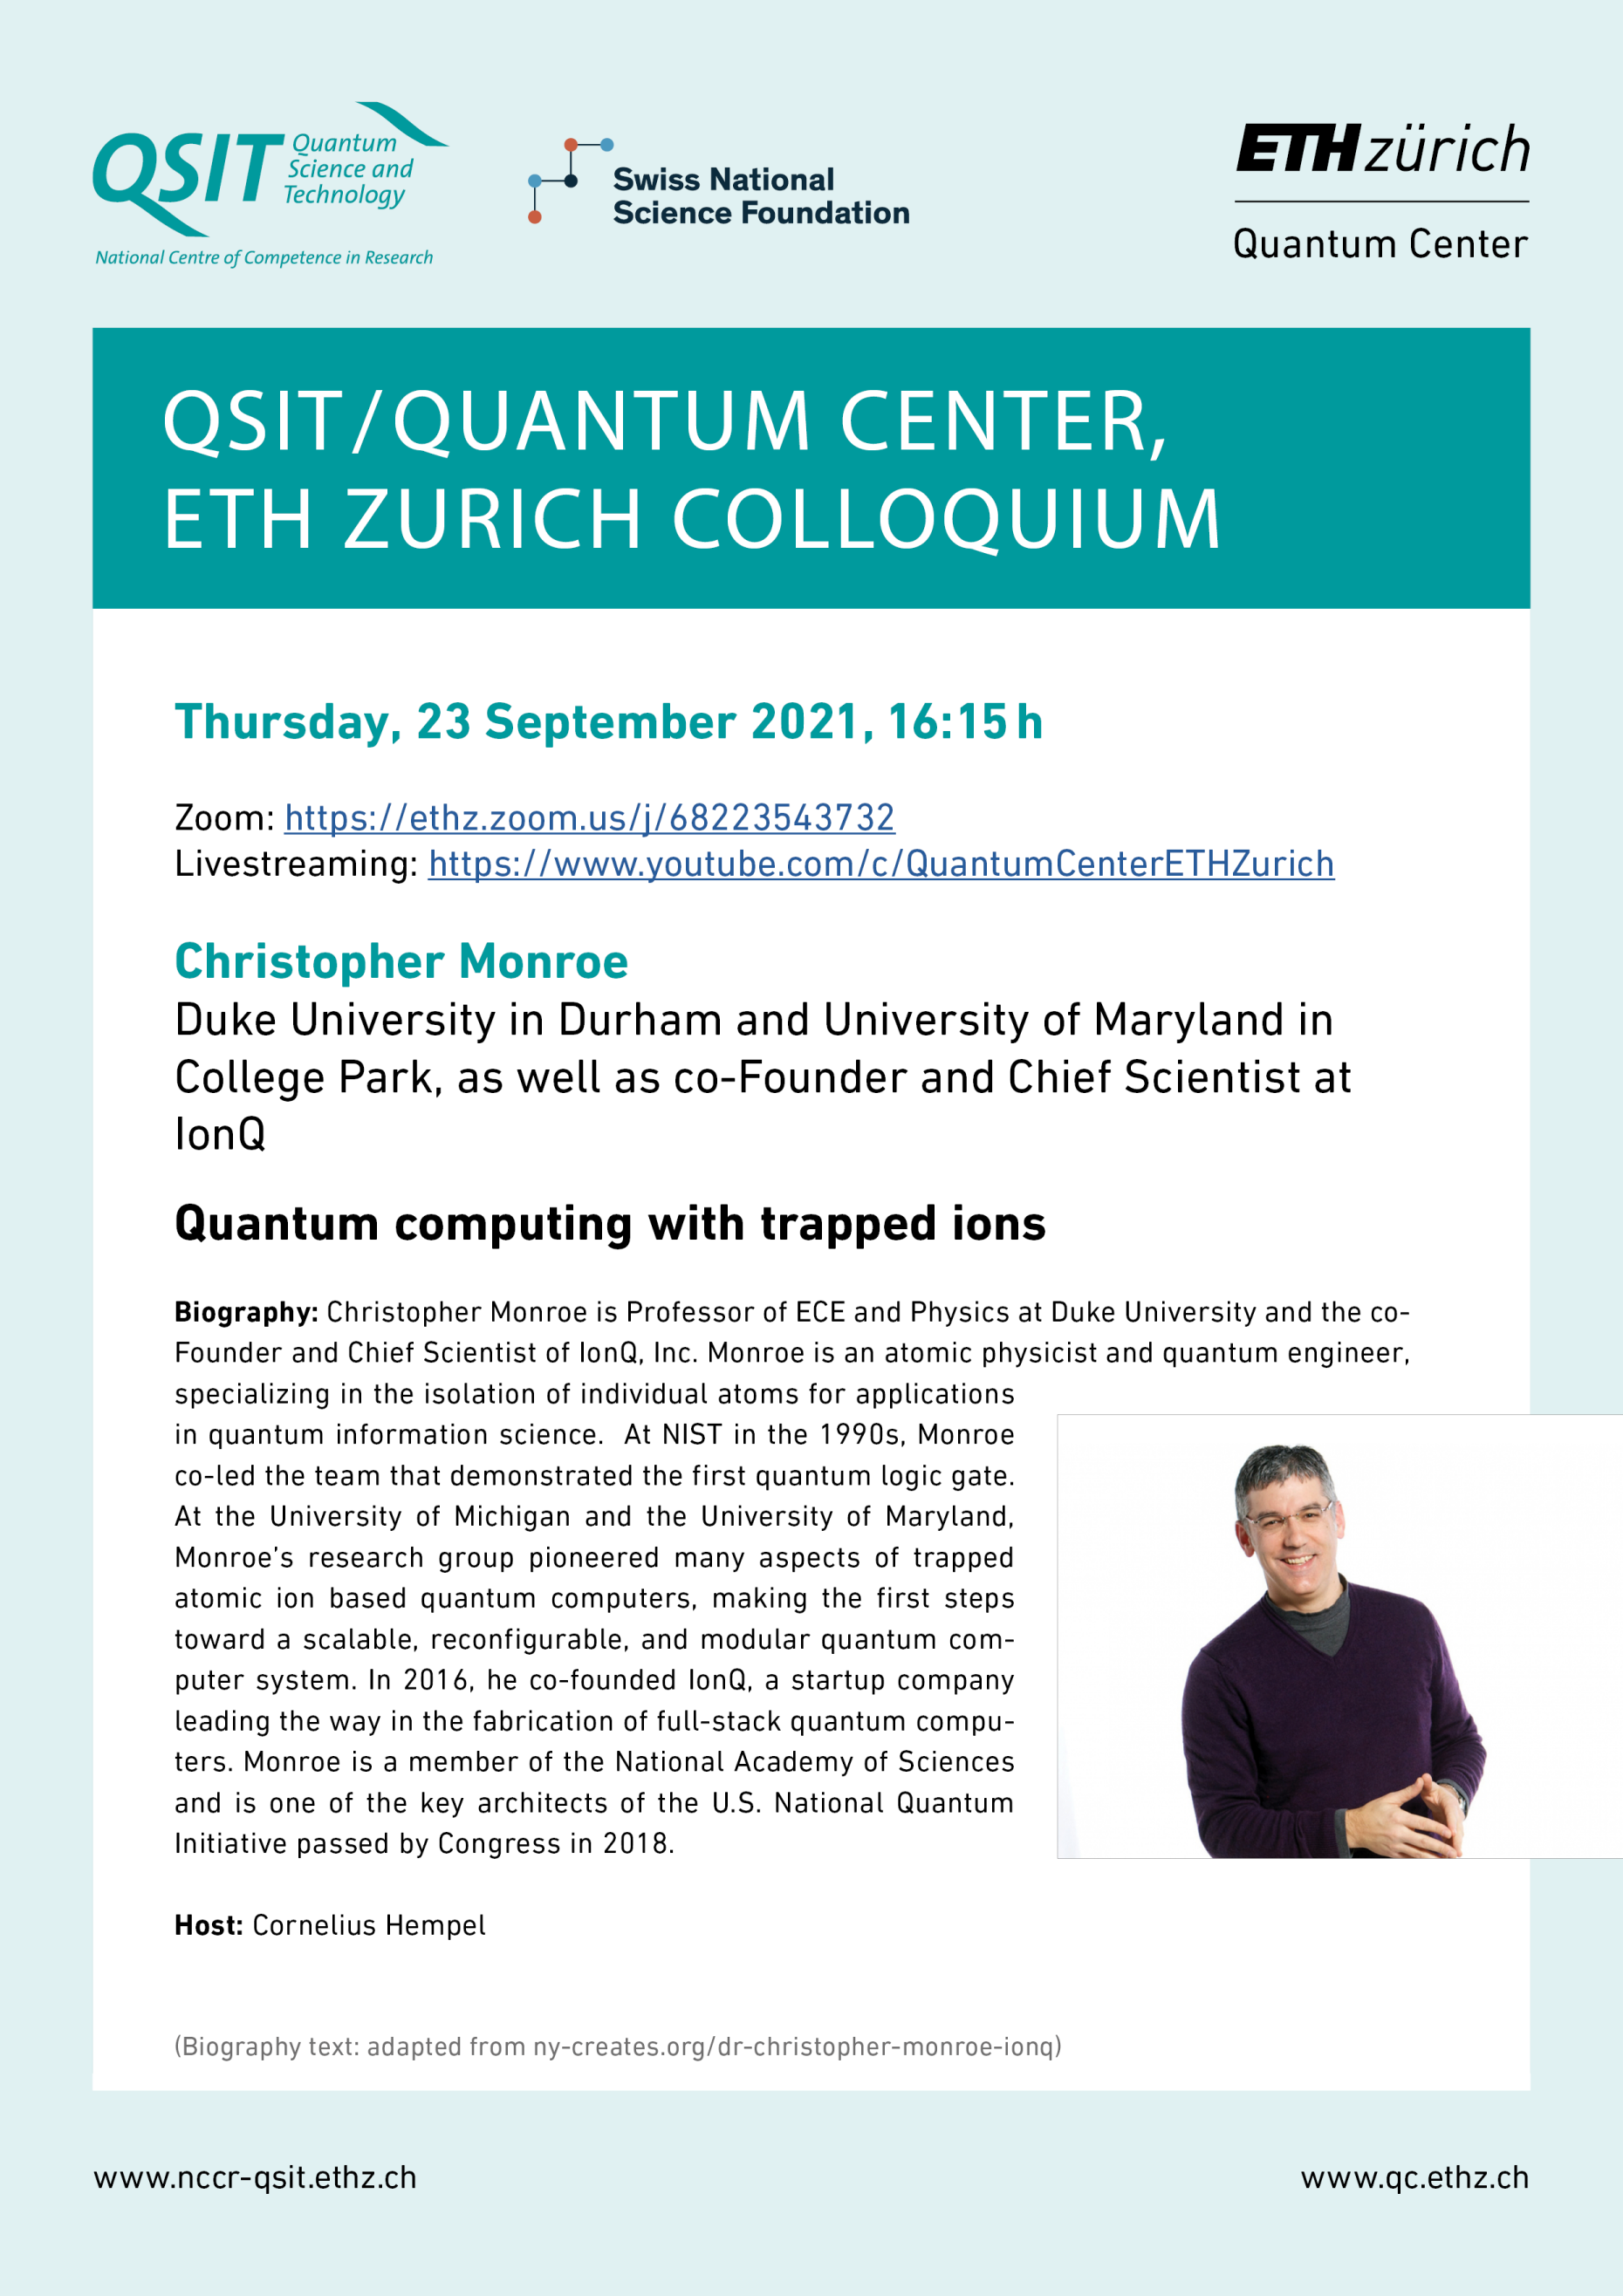 QSIT/Quantum Center, ETH Zurich Colloquium, Christopher Monroe